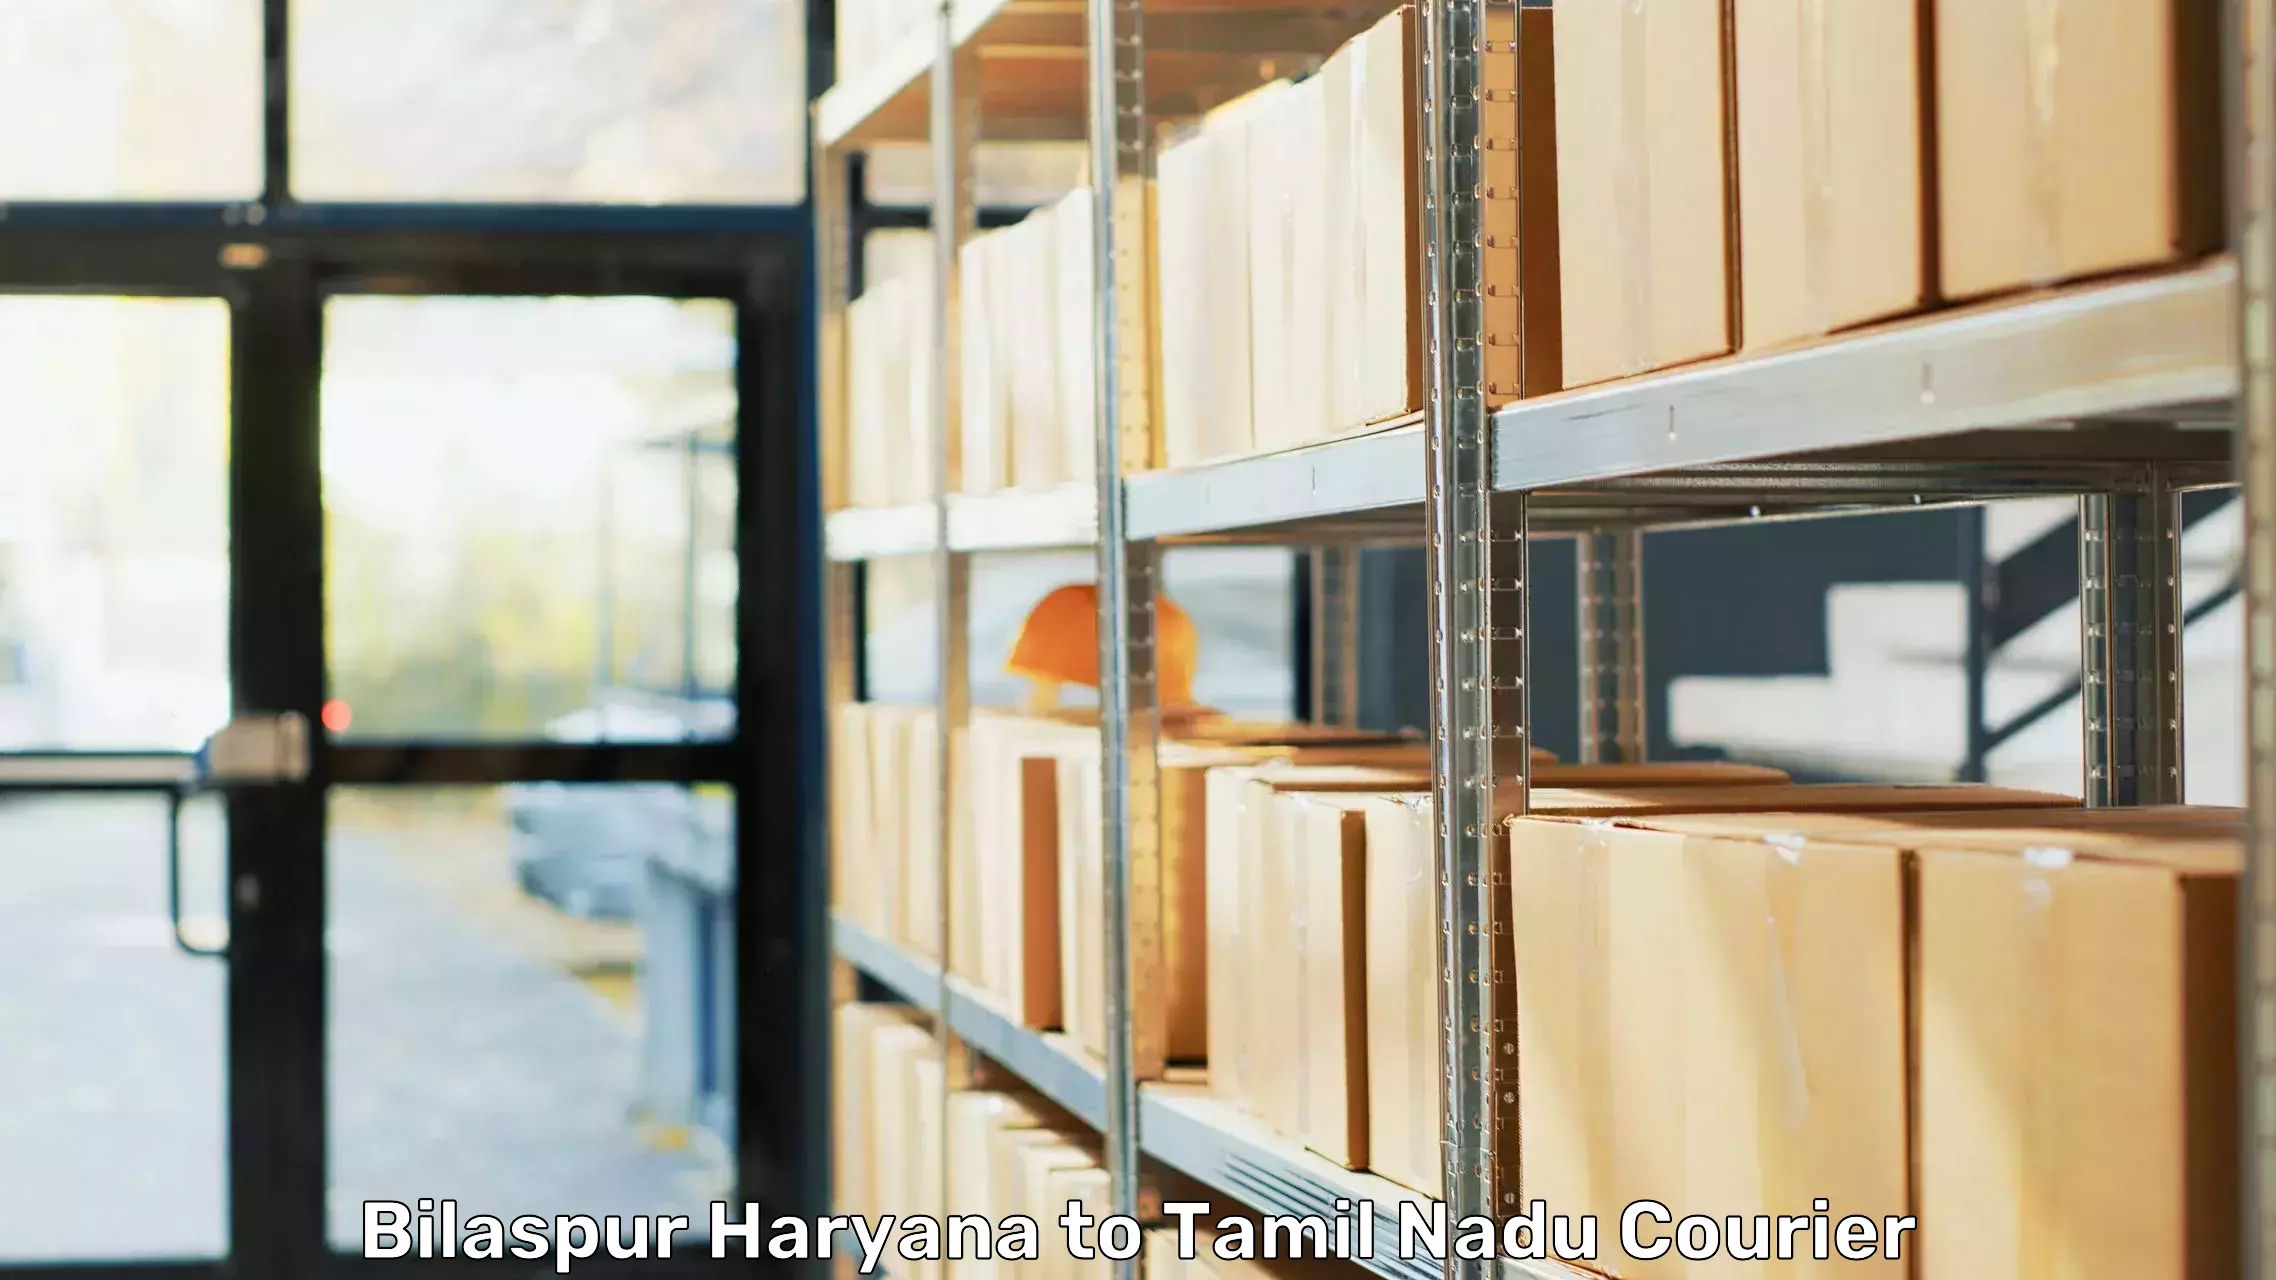 Moving and packing experts Bilaspur Haryana to Chengalpattu